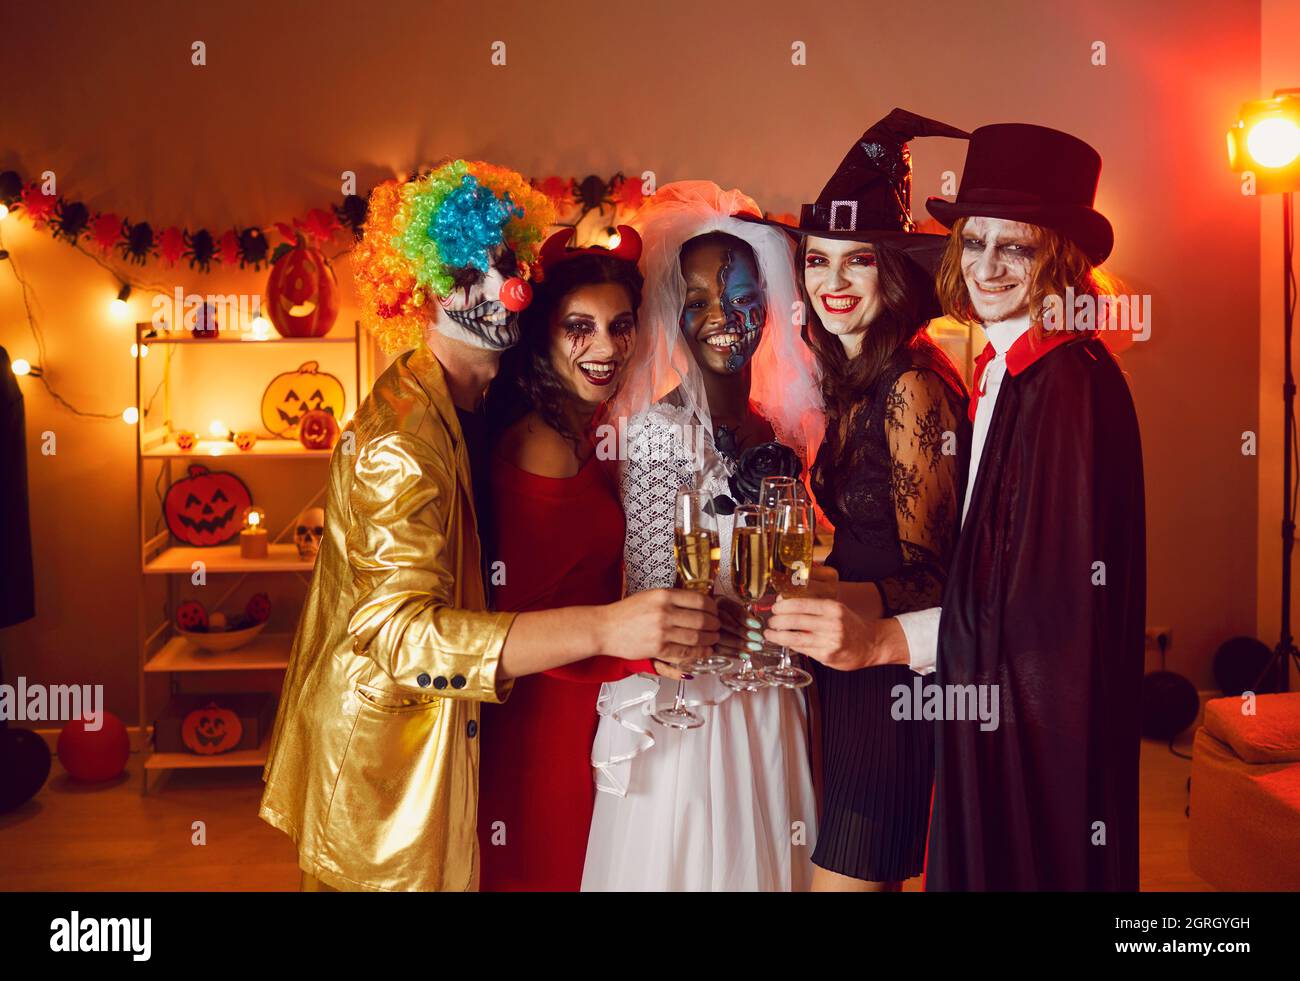 Groupe diversifié de jeunes hommes et femmes heureux de clinking lunettes lors d'une fête d'Halloween Banque D'Images